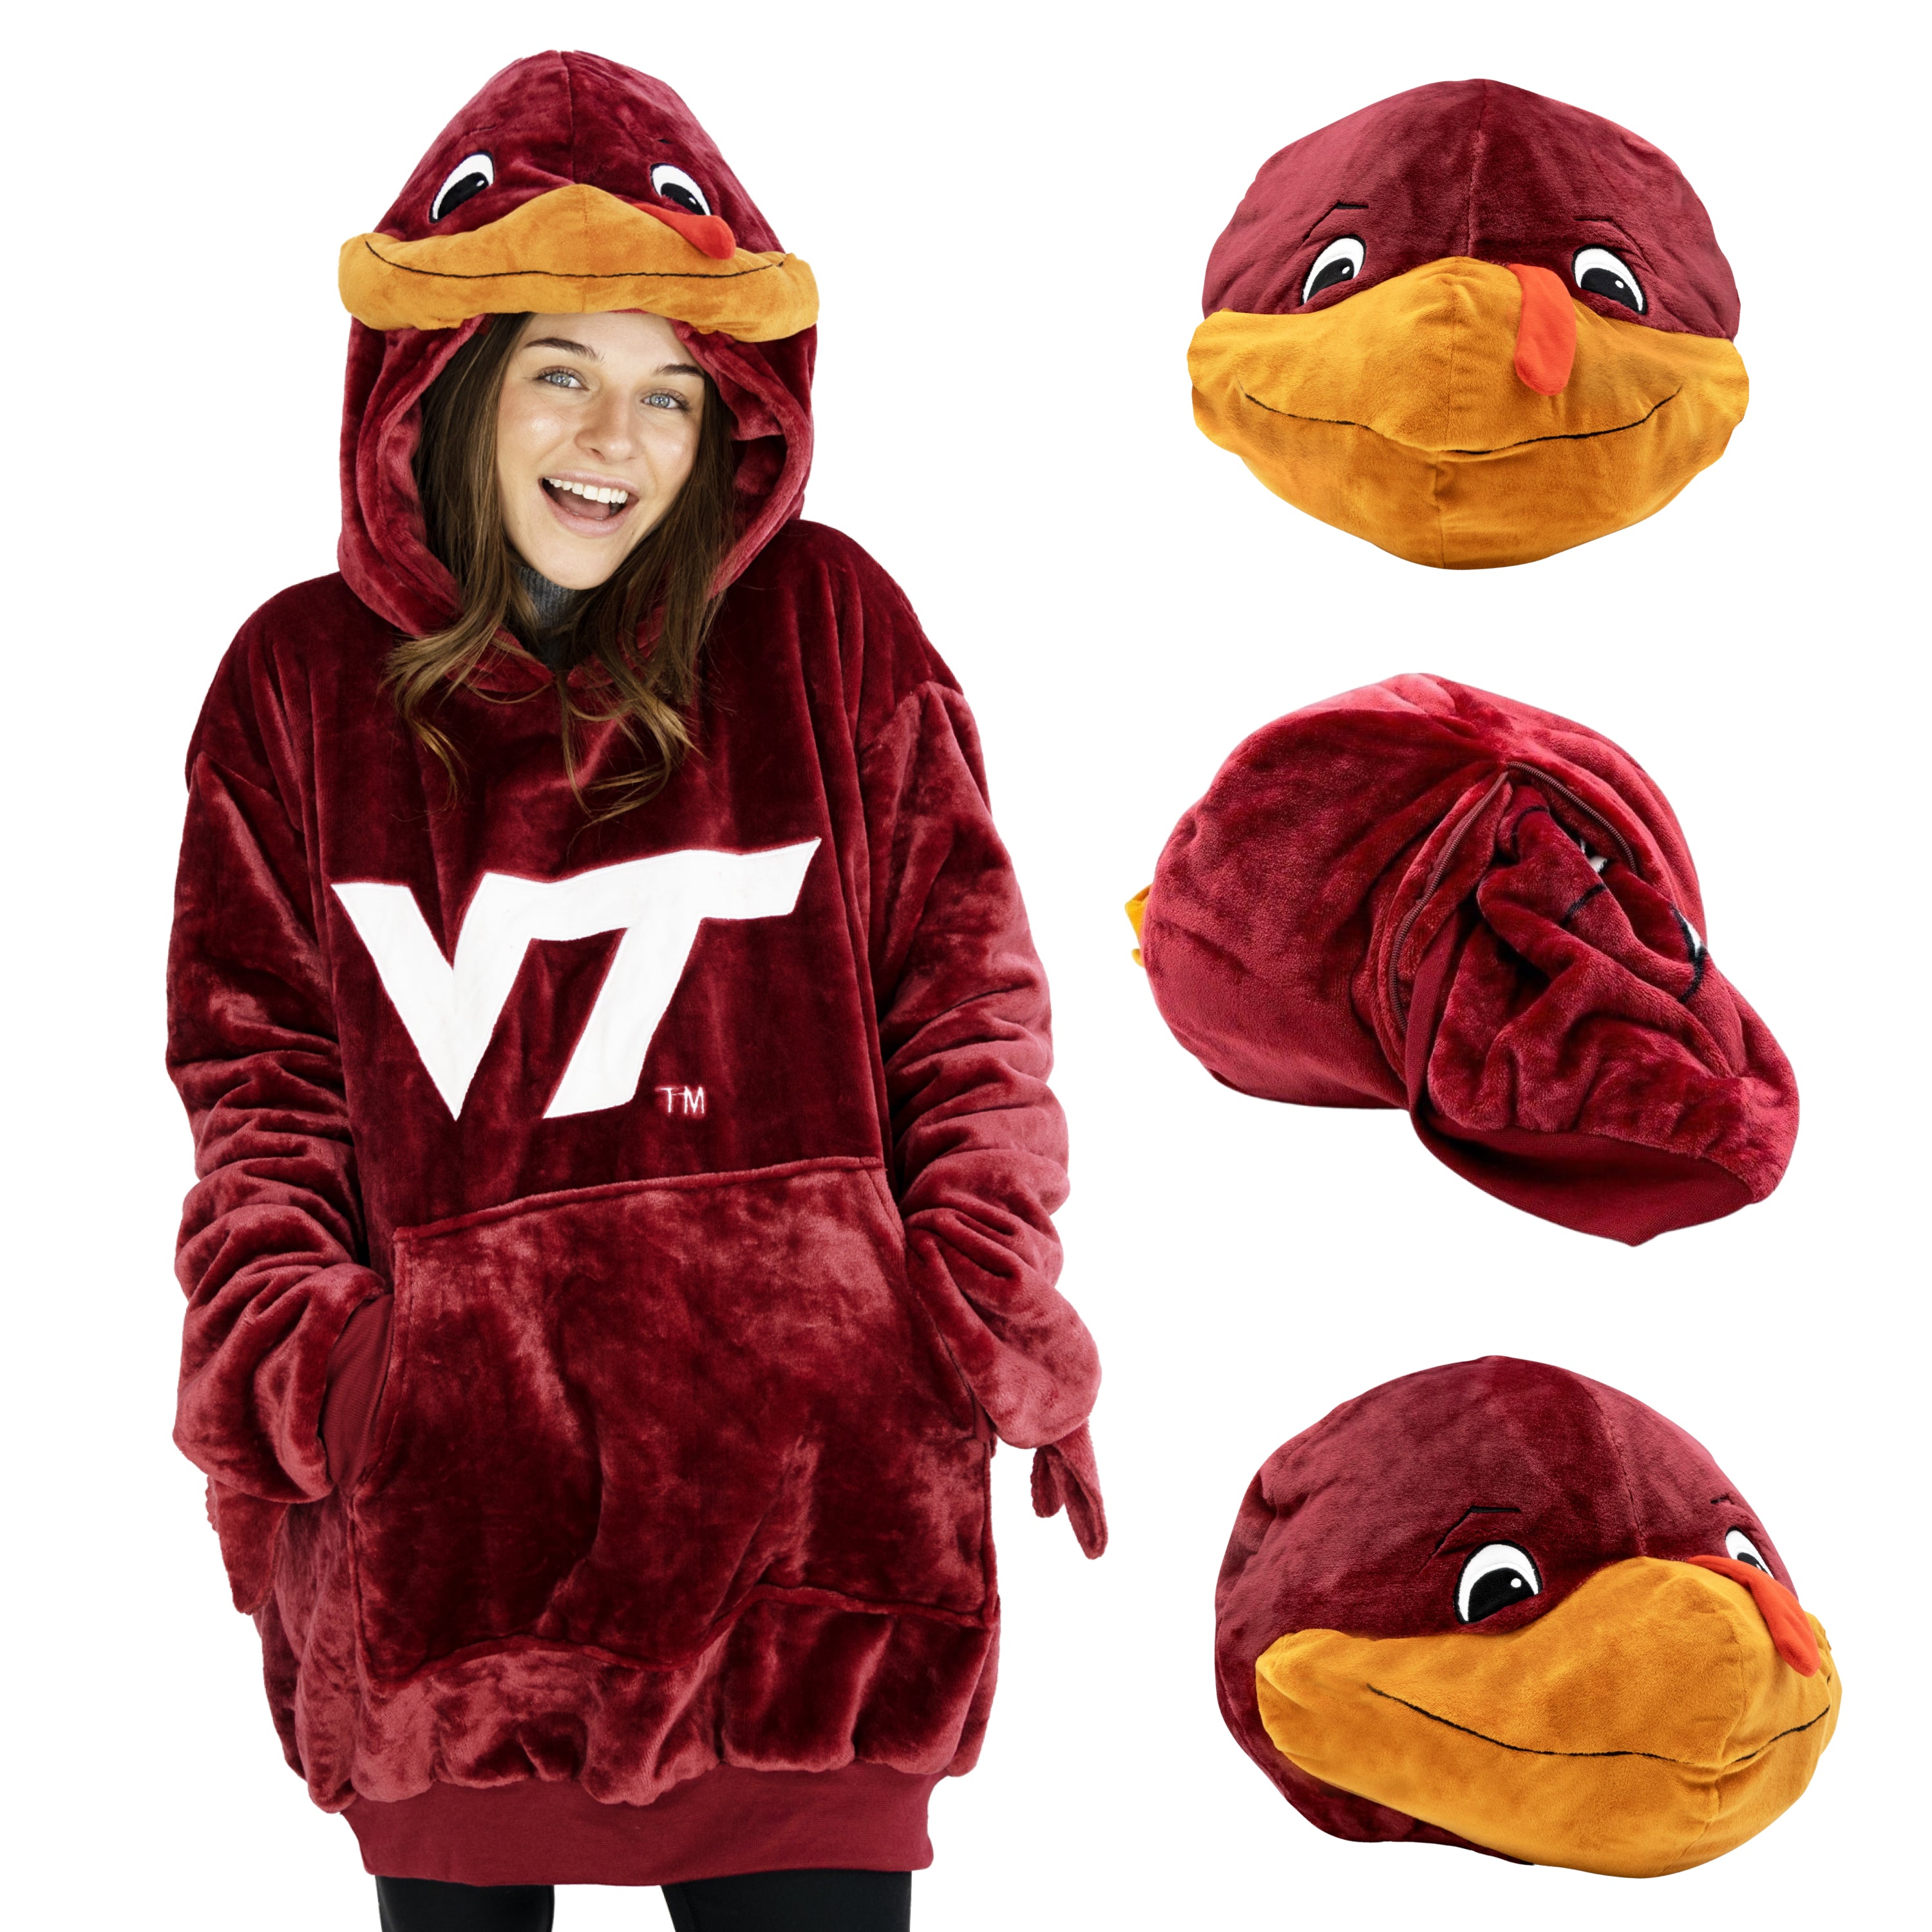 Virginia Tech Hokie Snugible | Blanket Hoodie & Plushie